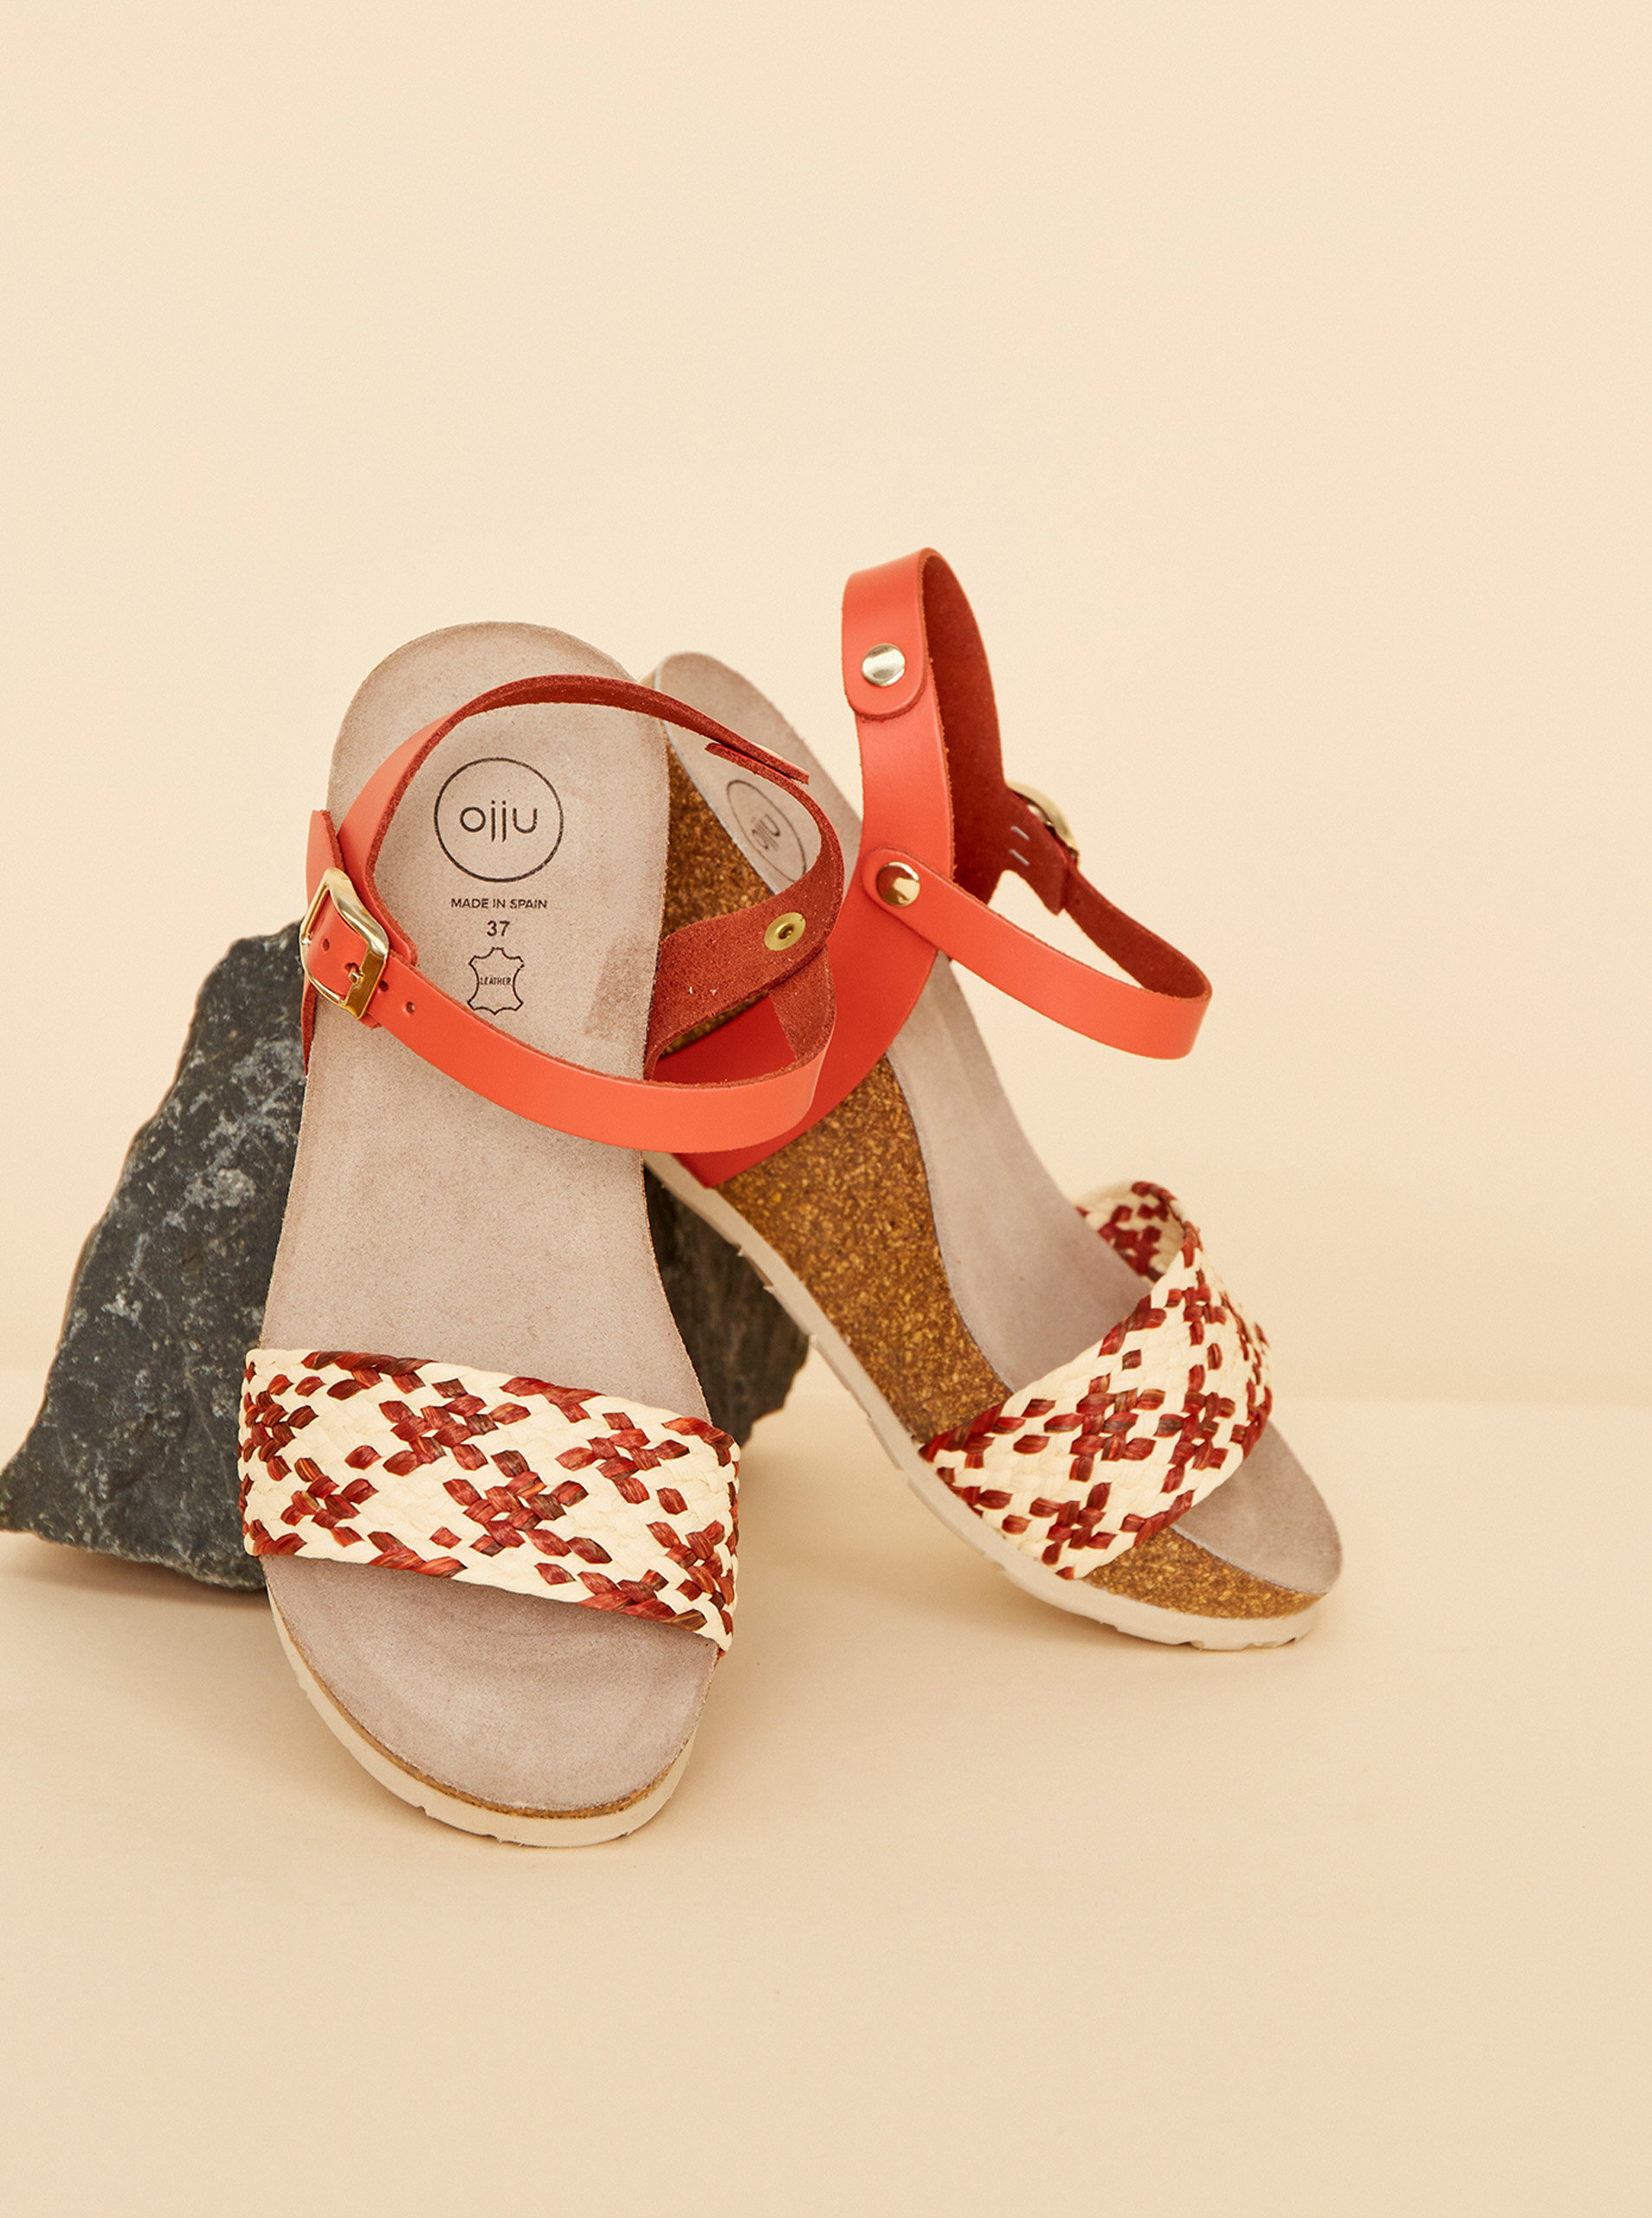 Fotografie Béžovo-červené dámské sandálky na klínku JJU OJJU A22:1306497_180